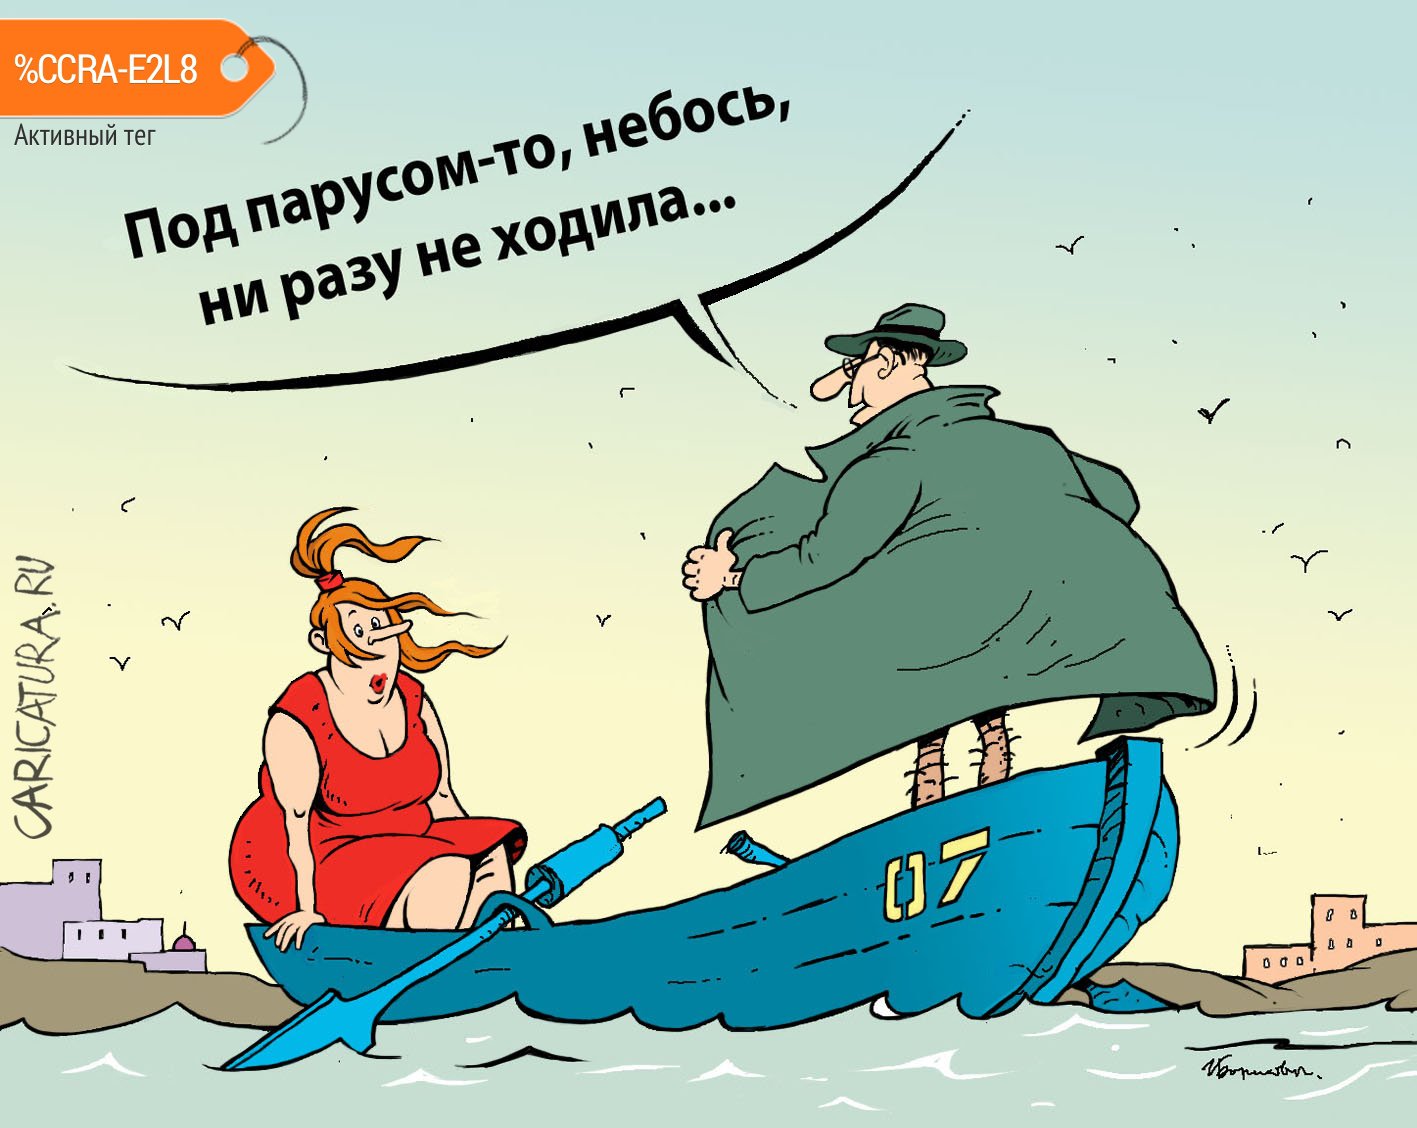 Карикатура "Под парусом", Игорь Елистратов